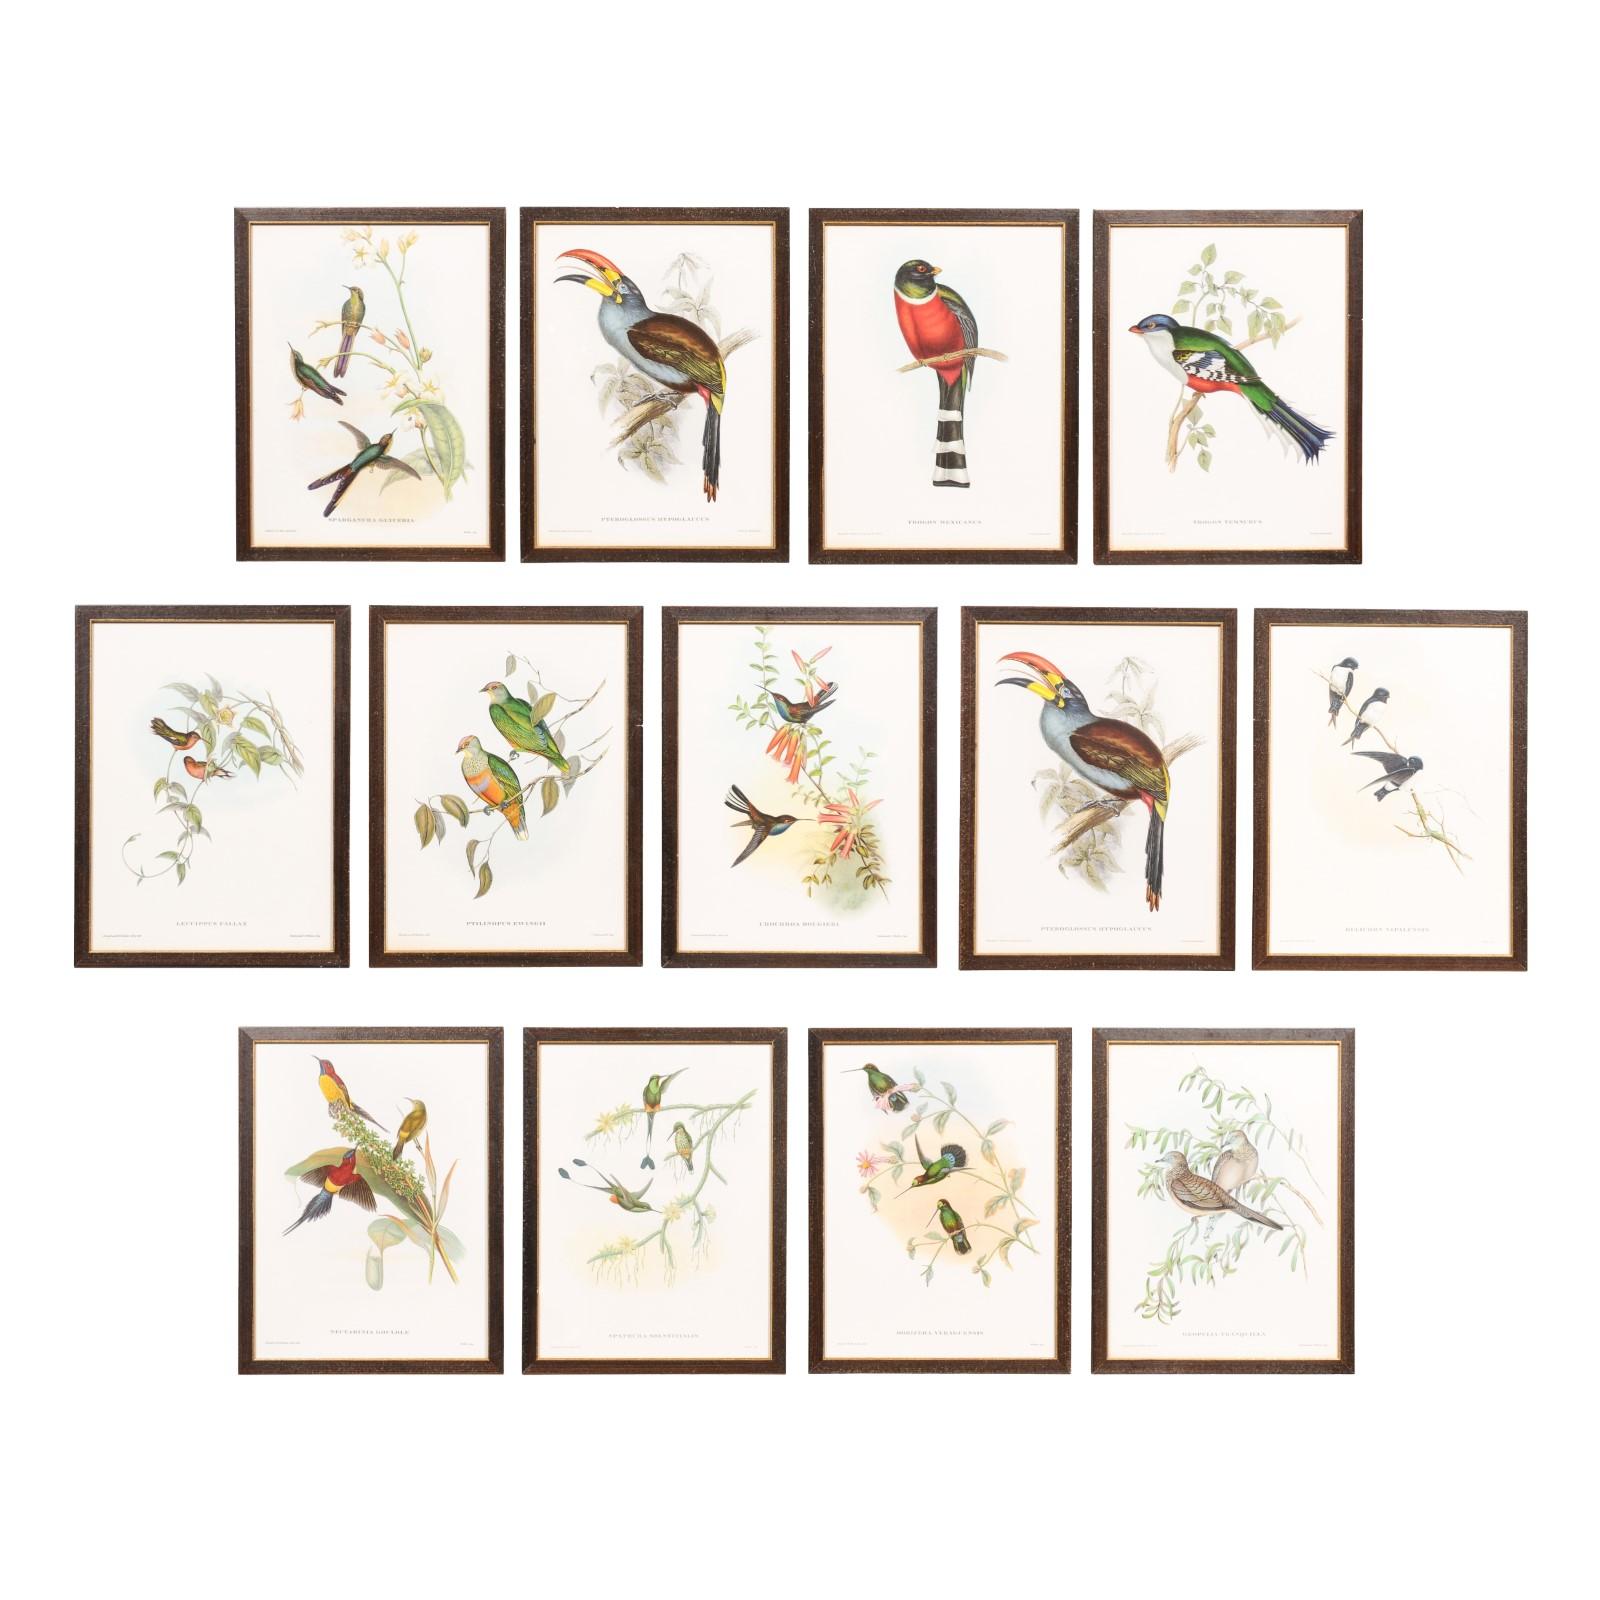 Cette collection d'estampes encadrées d'oiseaux tropicaux de John Gould, tirées de son édition limitée à 1000 exemplaires, met en valeur le talent remarquable de cet ornithologue britannique du XIXe siècle. Nous avons le privilège de présenter 13 de